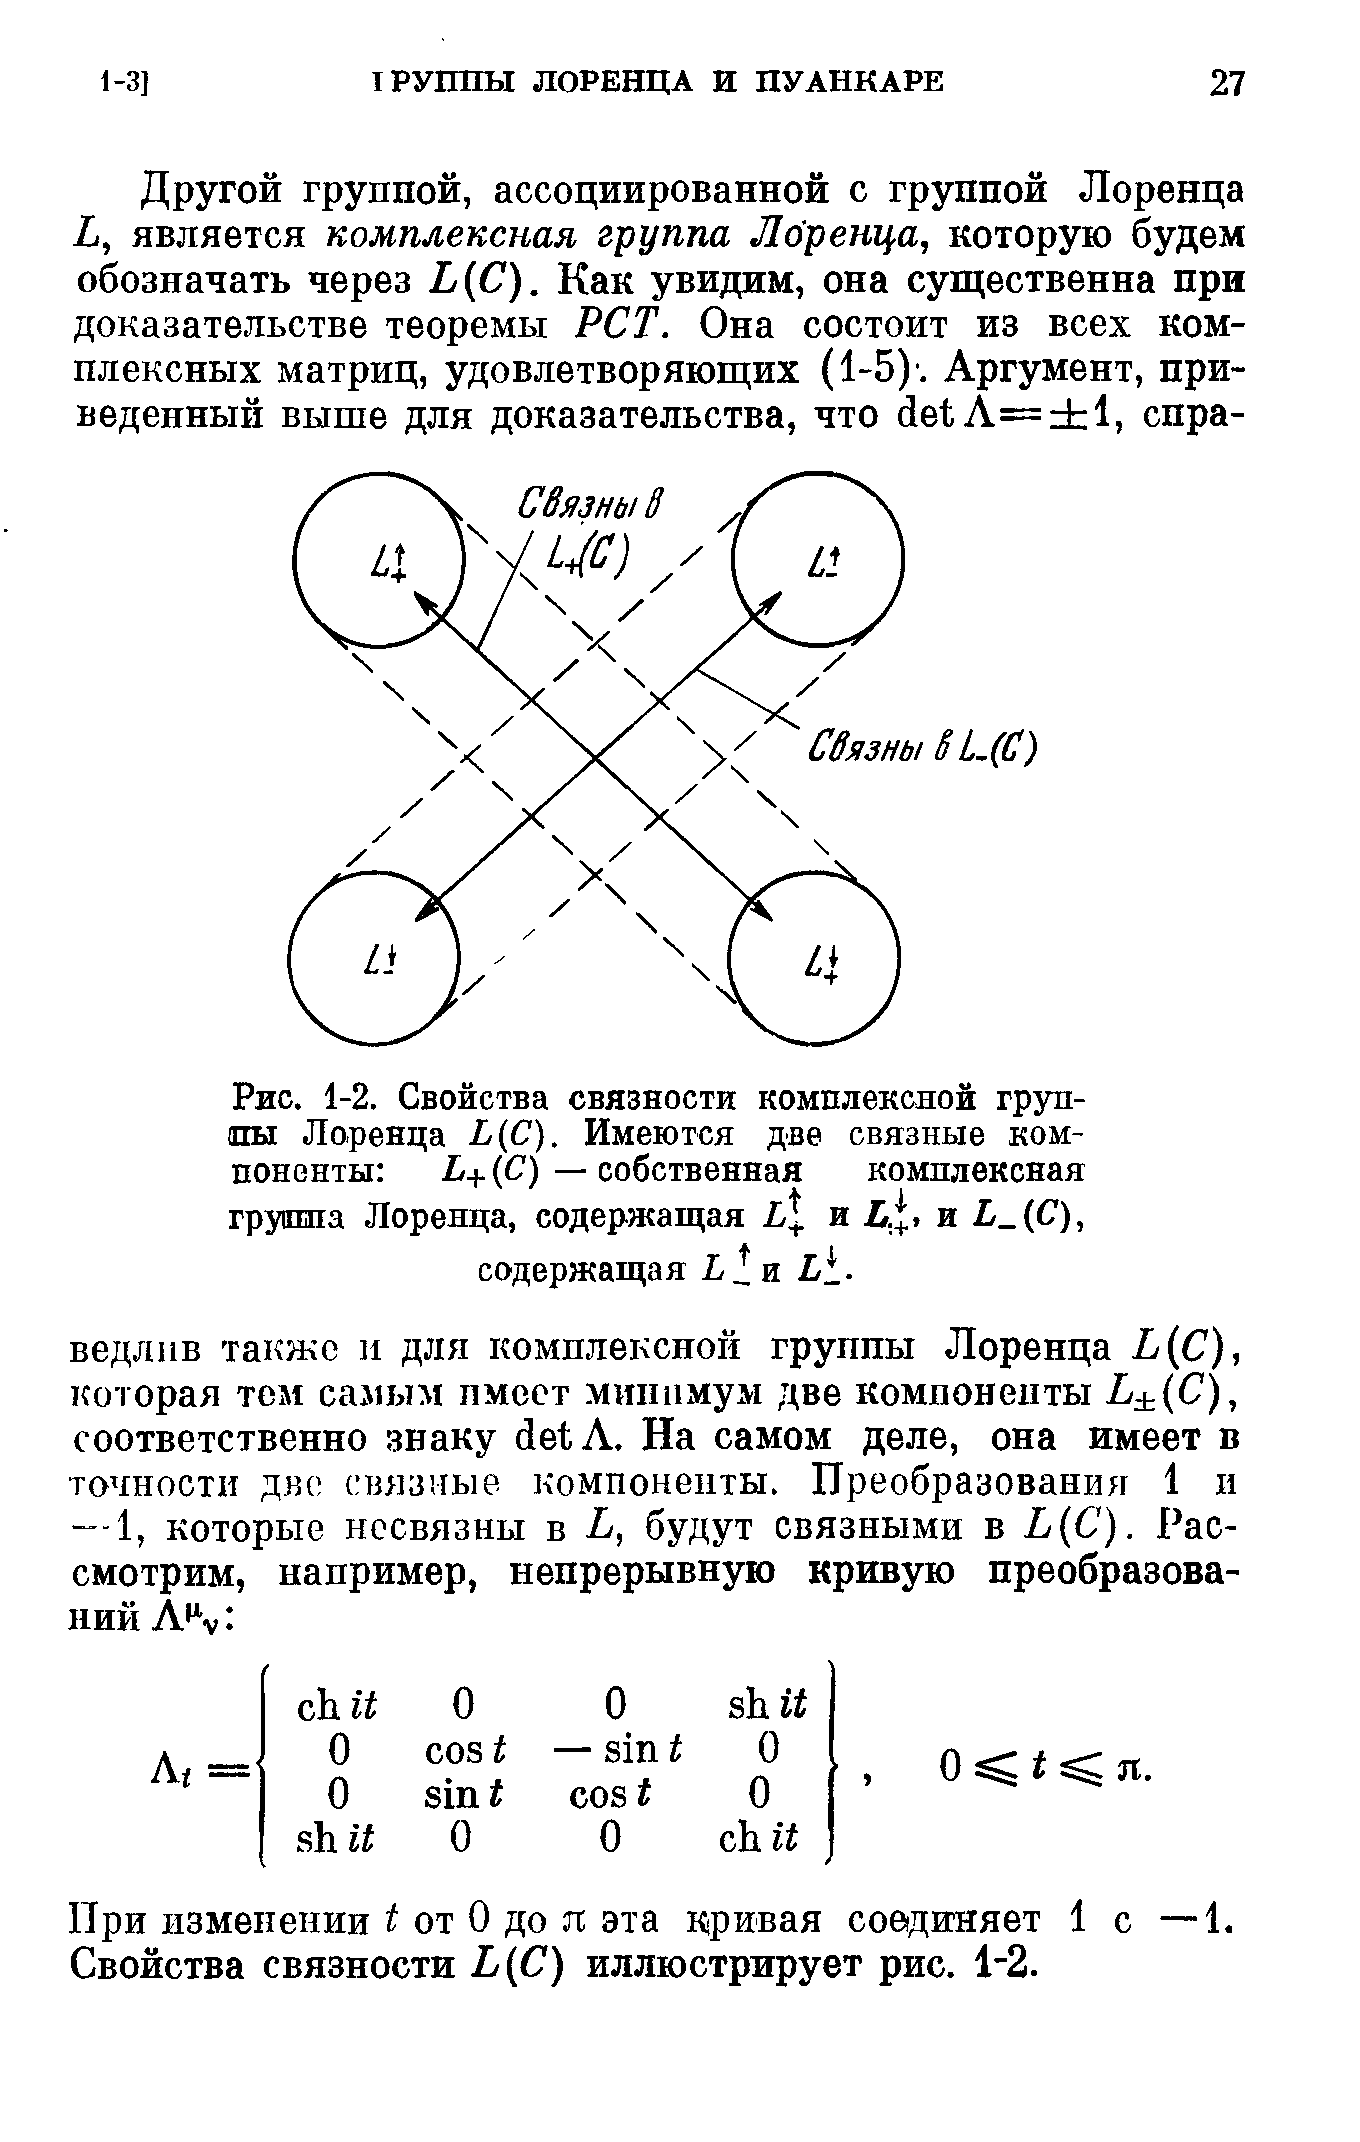 Рис. 1-2. Свойства связности комплексной группы Лоренца Ь(С). Имеются две связные компоненты Ь+ (С) — собственная комплексная группа Лоренца, содержащая и и Ь С), содержащая
